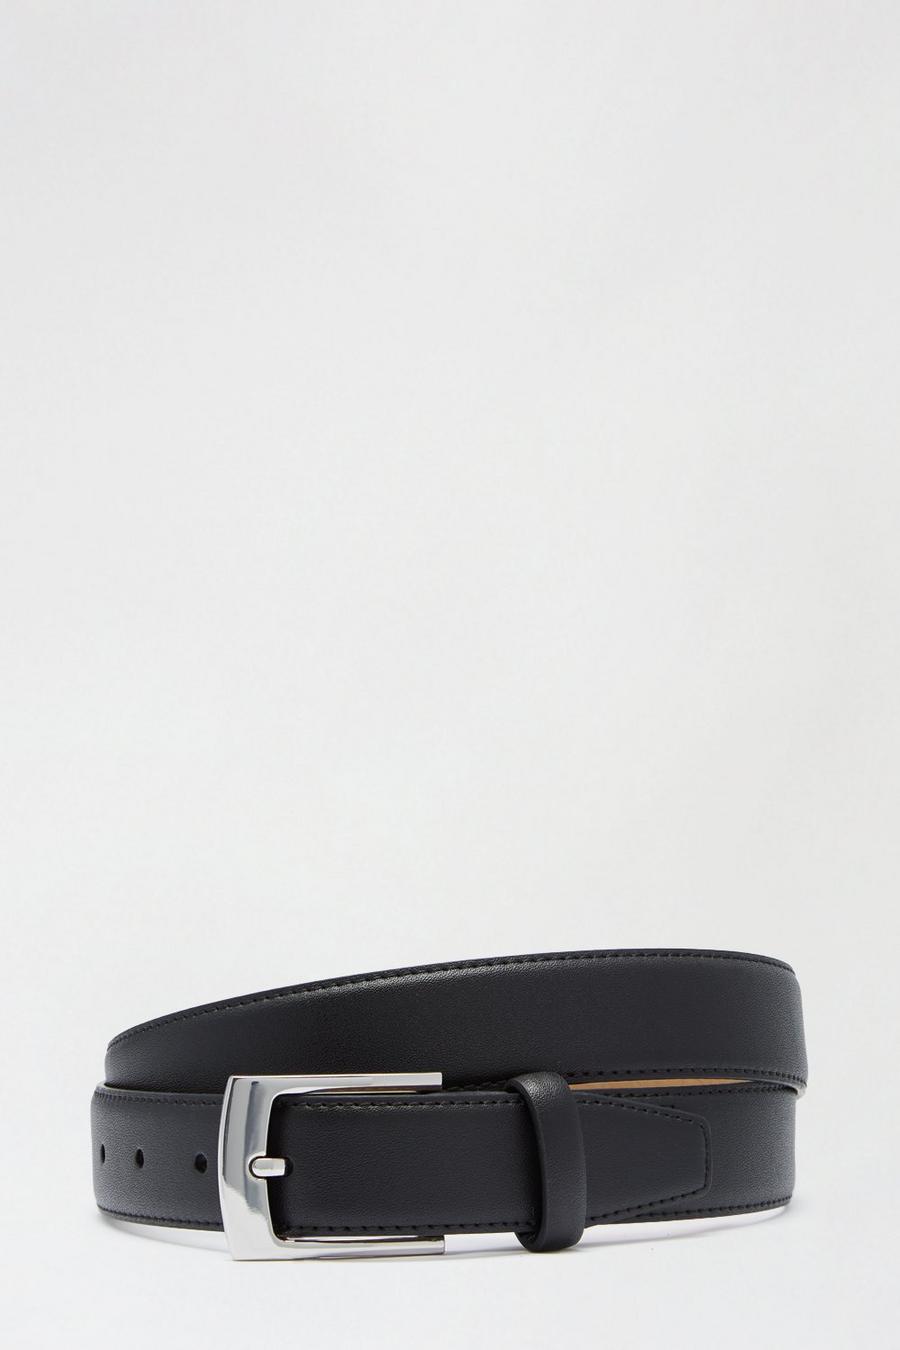 Silver Buckle Smart Leather Belt